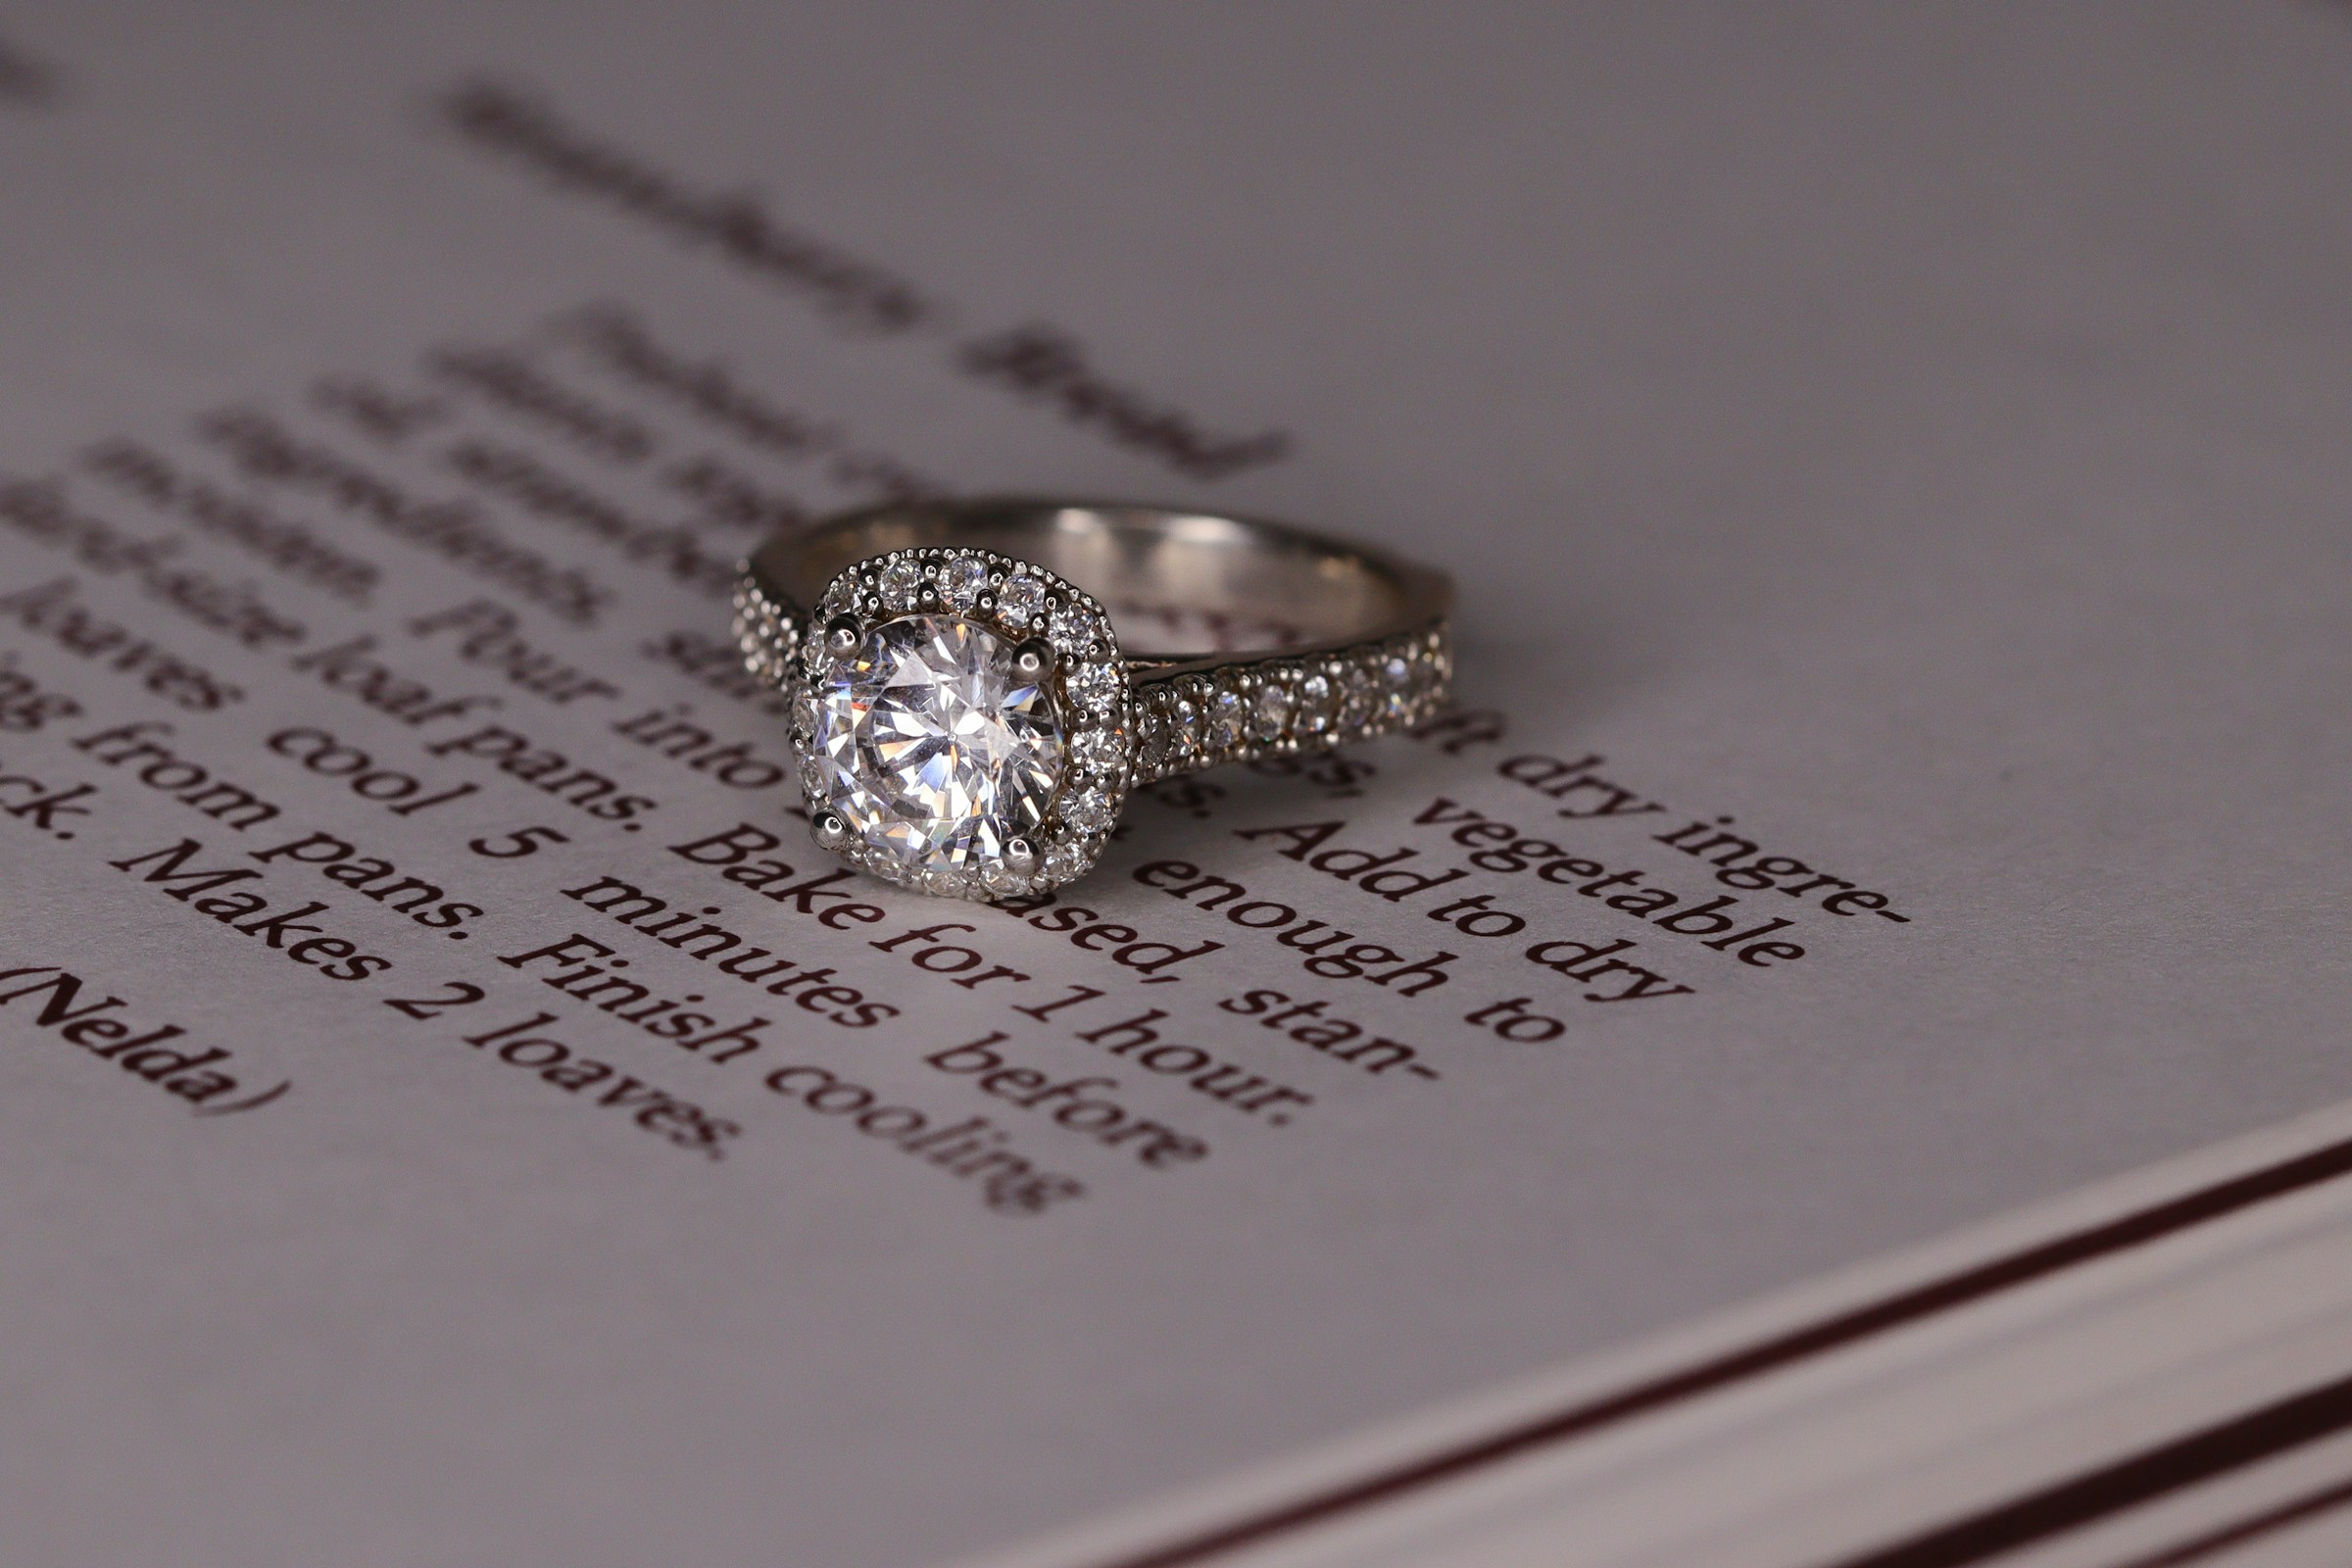 Une bague de fiançailles en or blanc avec un diamant sur un livre | Source : Unsplash